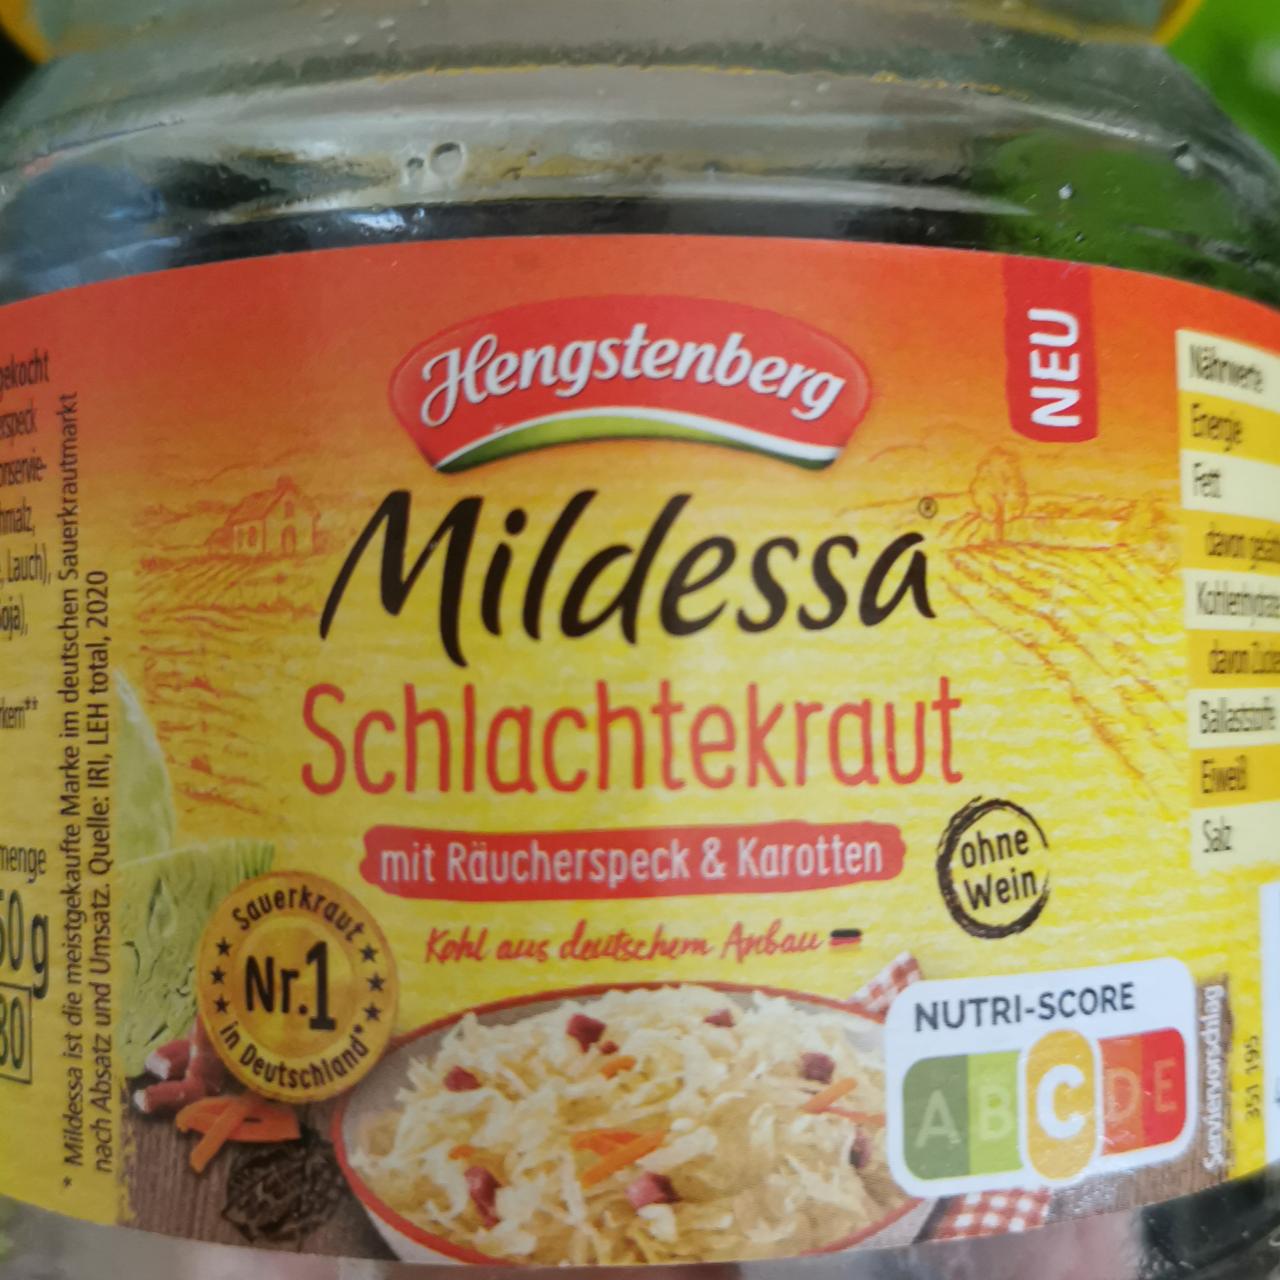 Fotografie - Schlachtekraut mit Karotten & Räucherspeck Hengstenberg-Mildessa